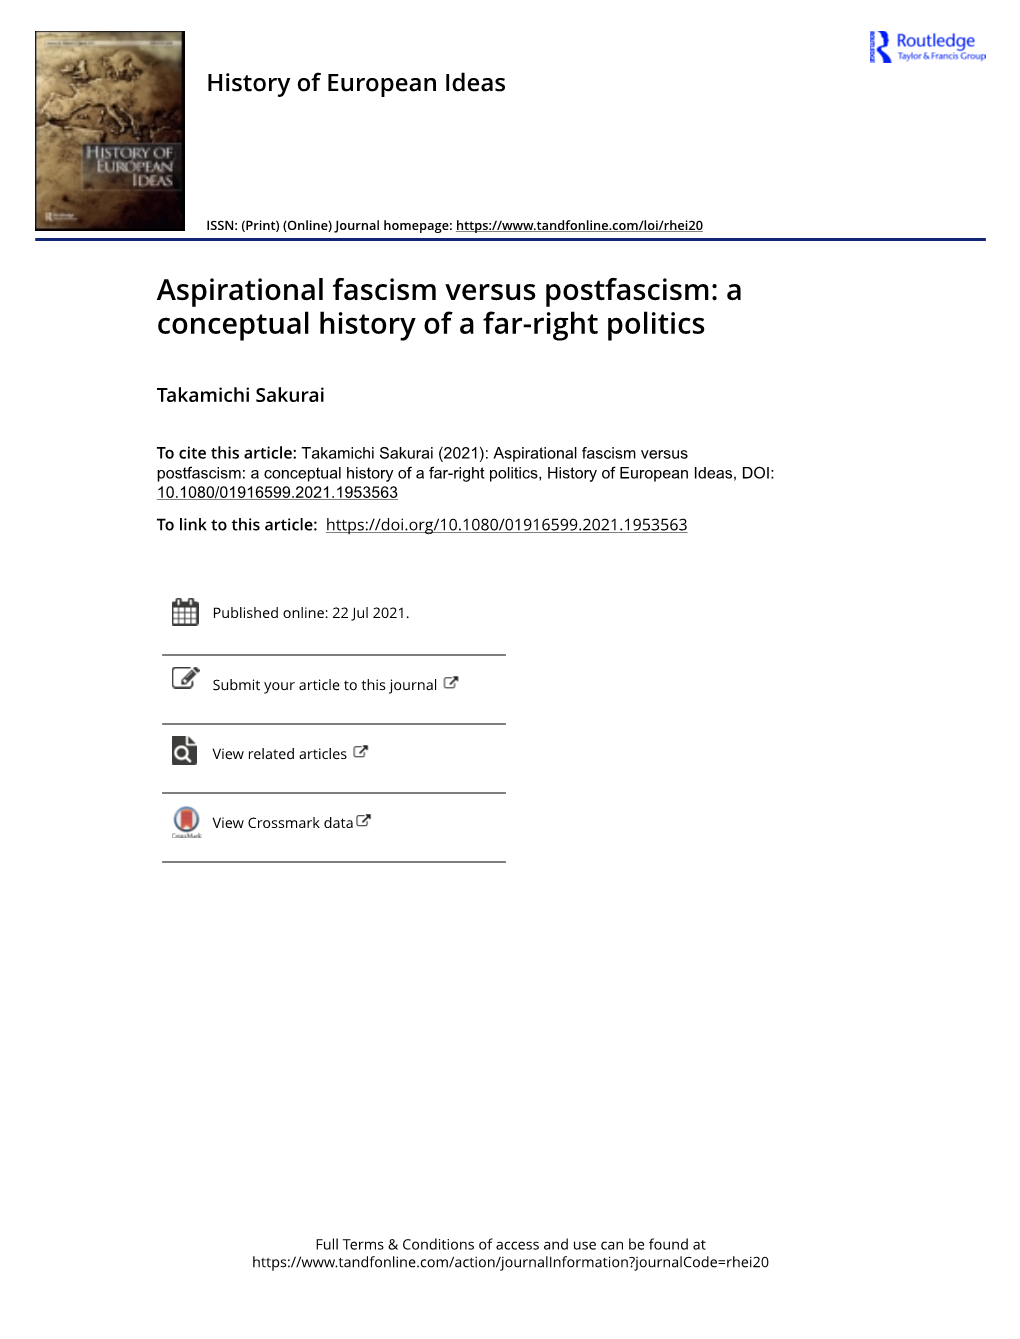 Aspirational Fascism Versus Postfascism: a Conceptual History of a Far-Right Politics